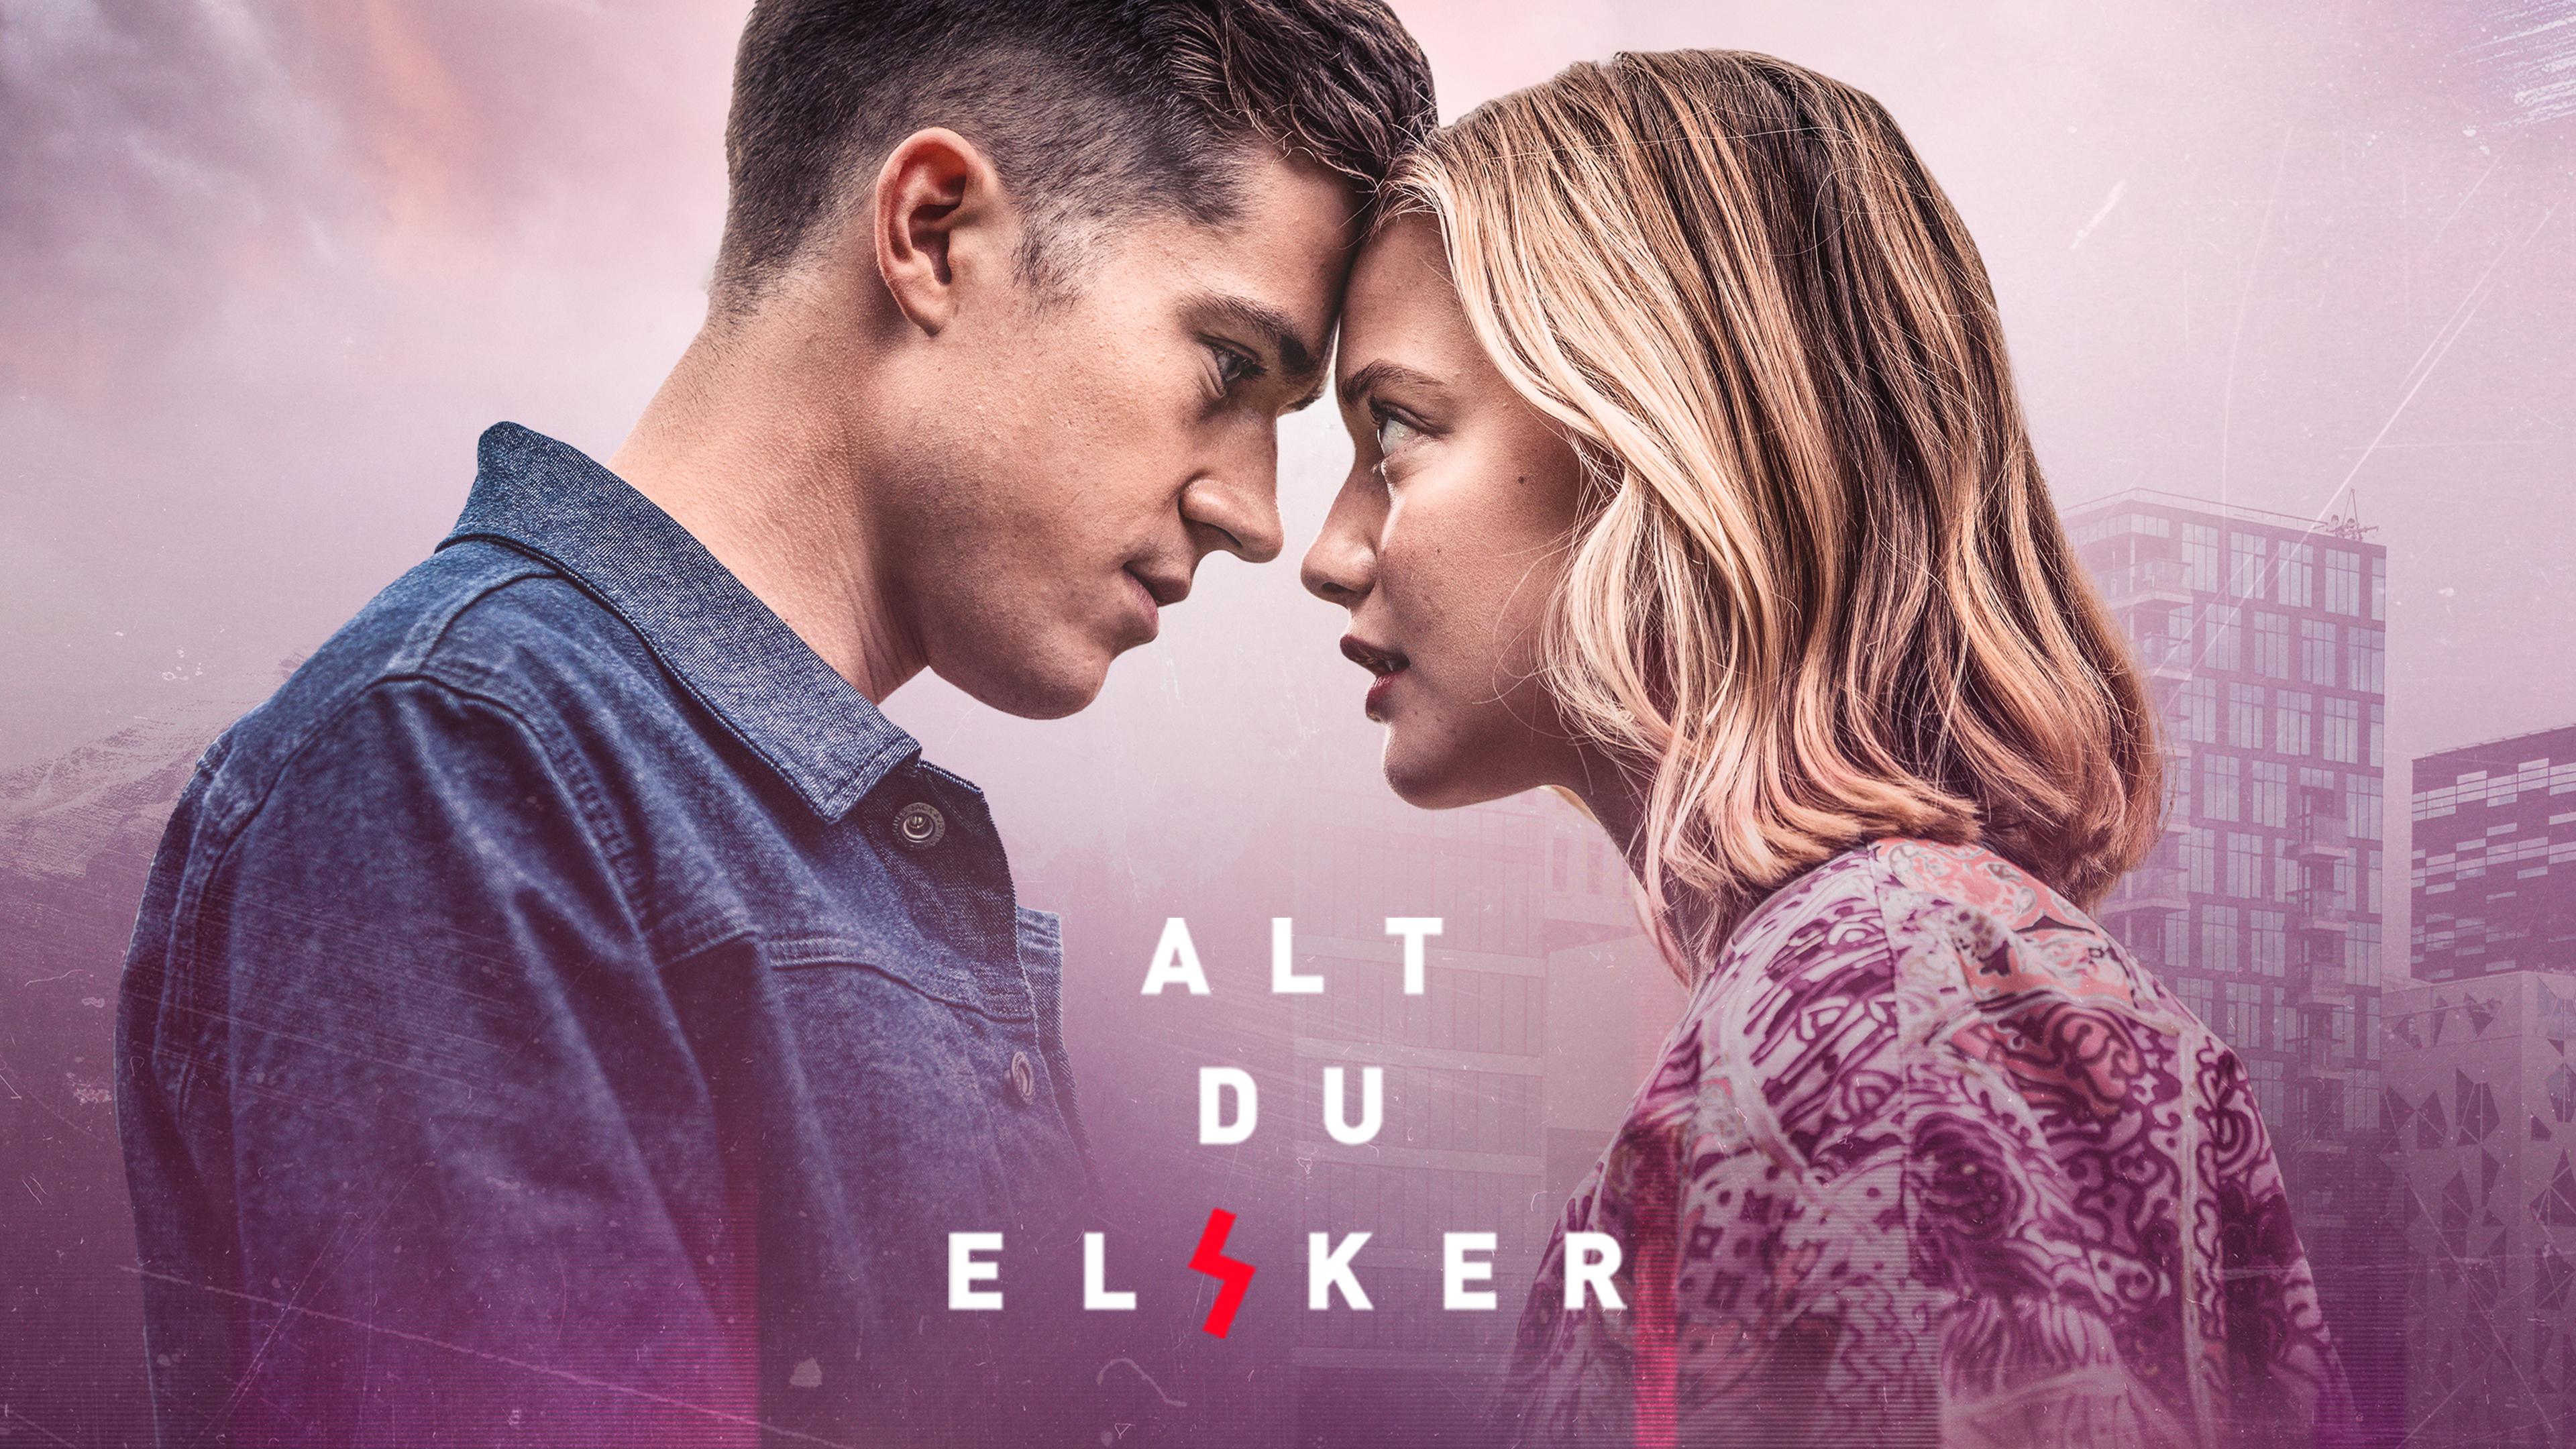 TV ratings for Alt Du Elsker in Spain. Discovery+ TV series